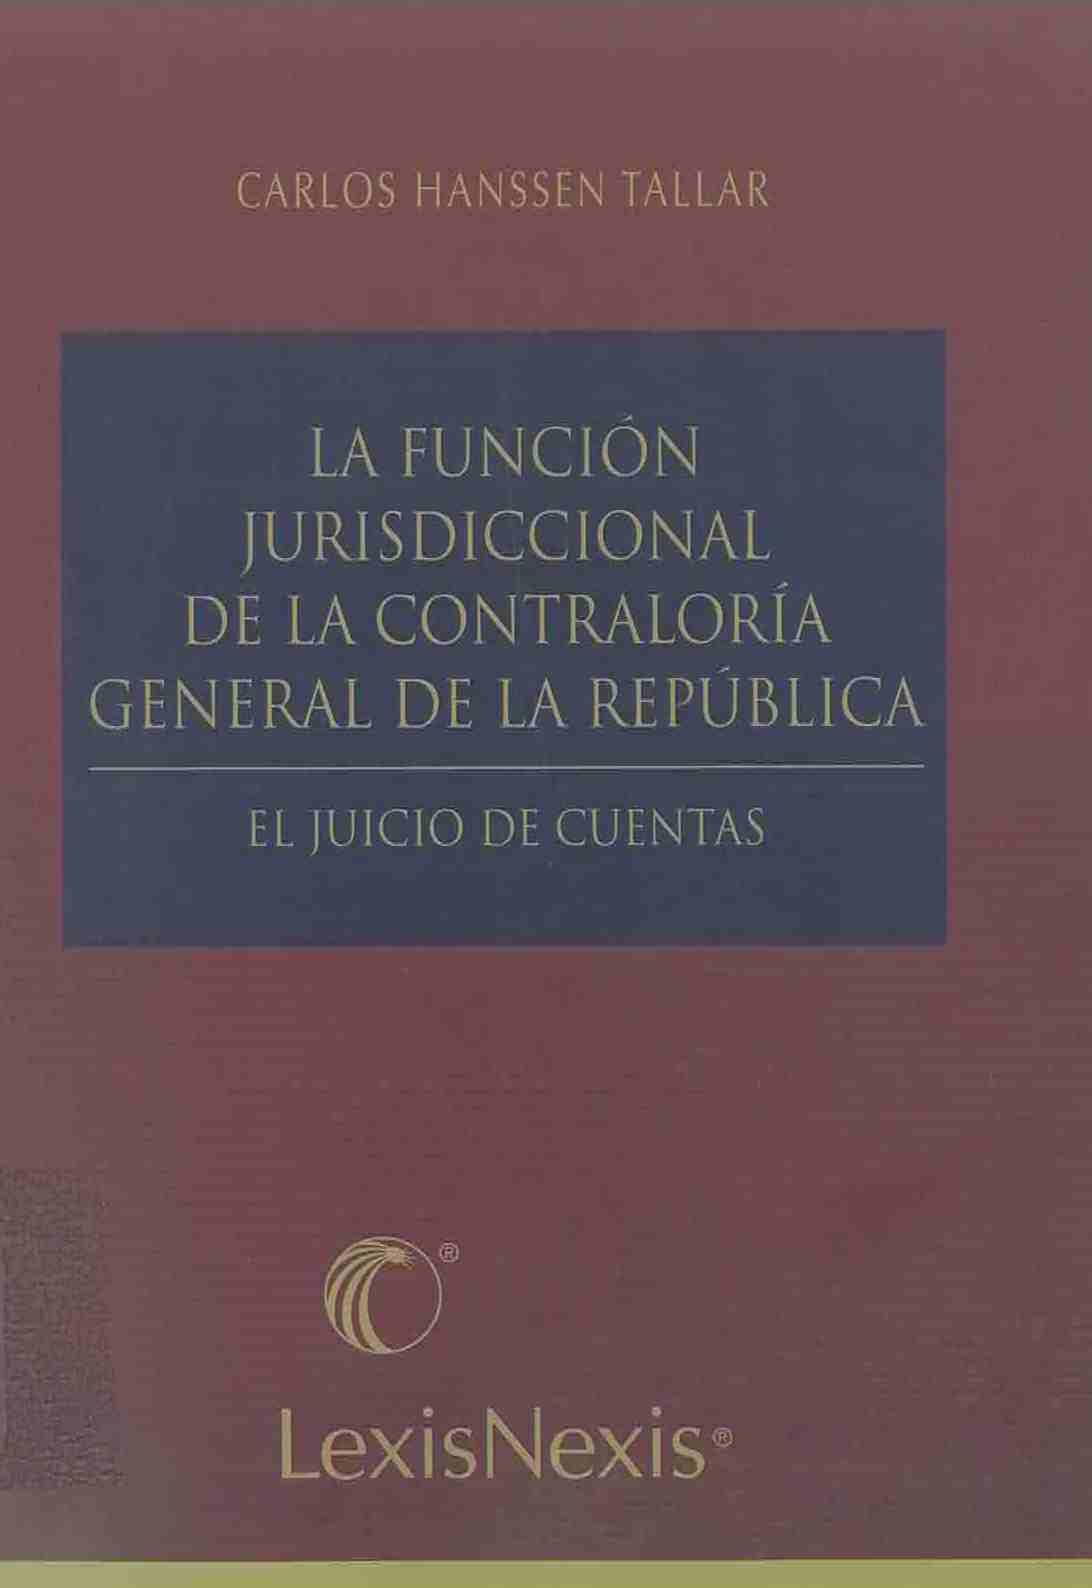 La Función jurisdiccional de la Contraloría General de la República : el juicio de cuentas